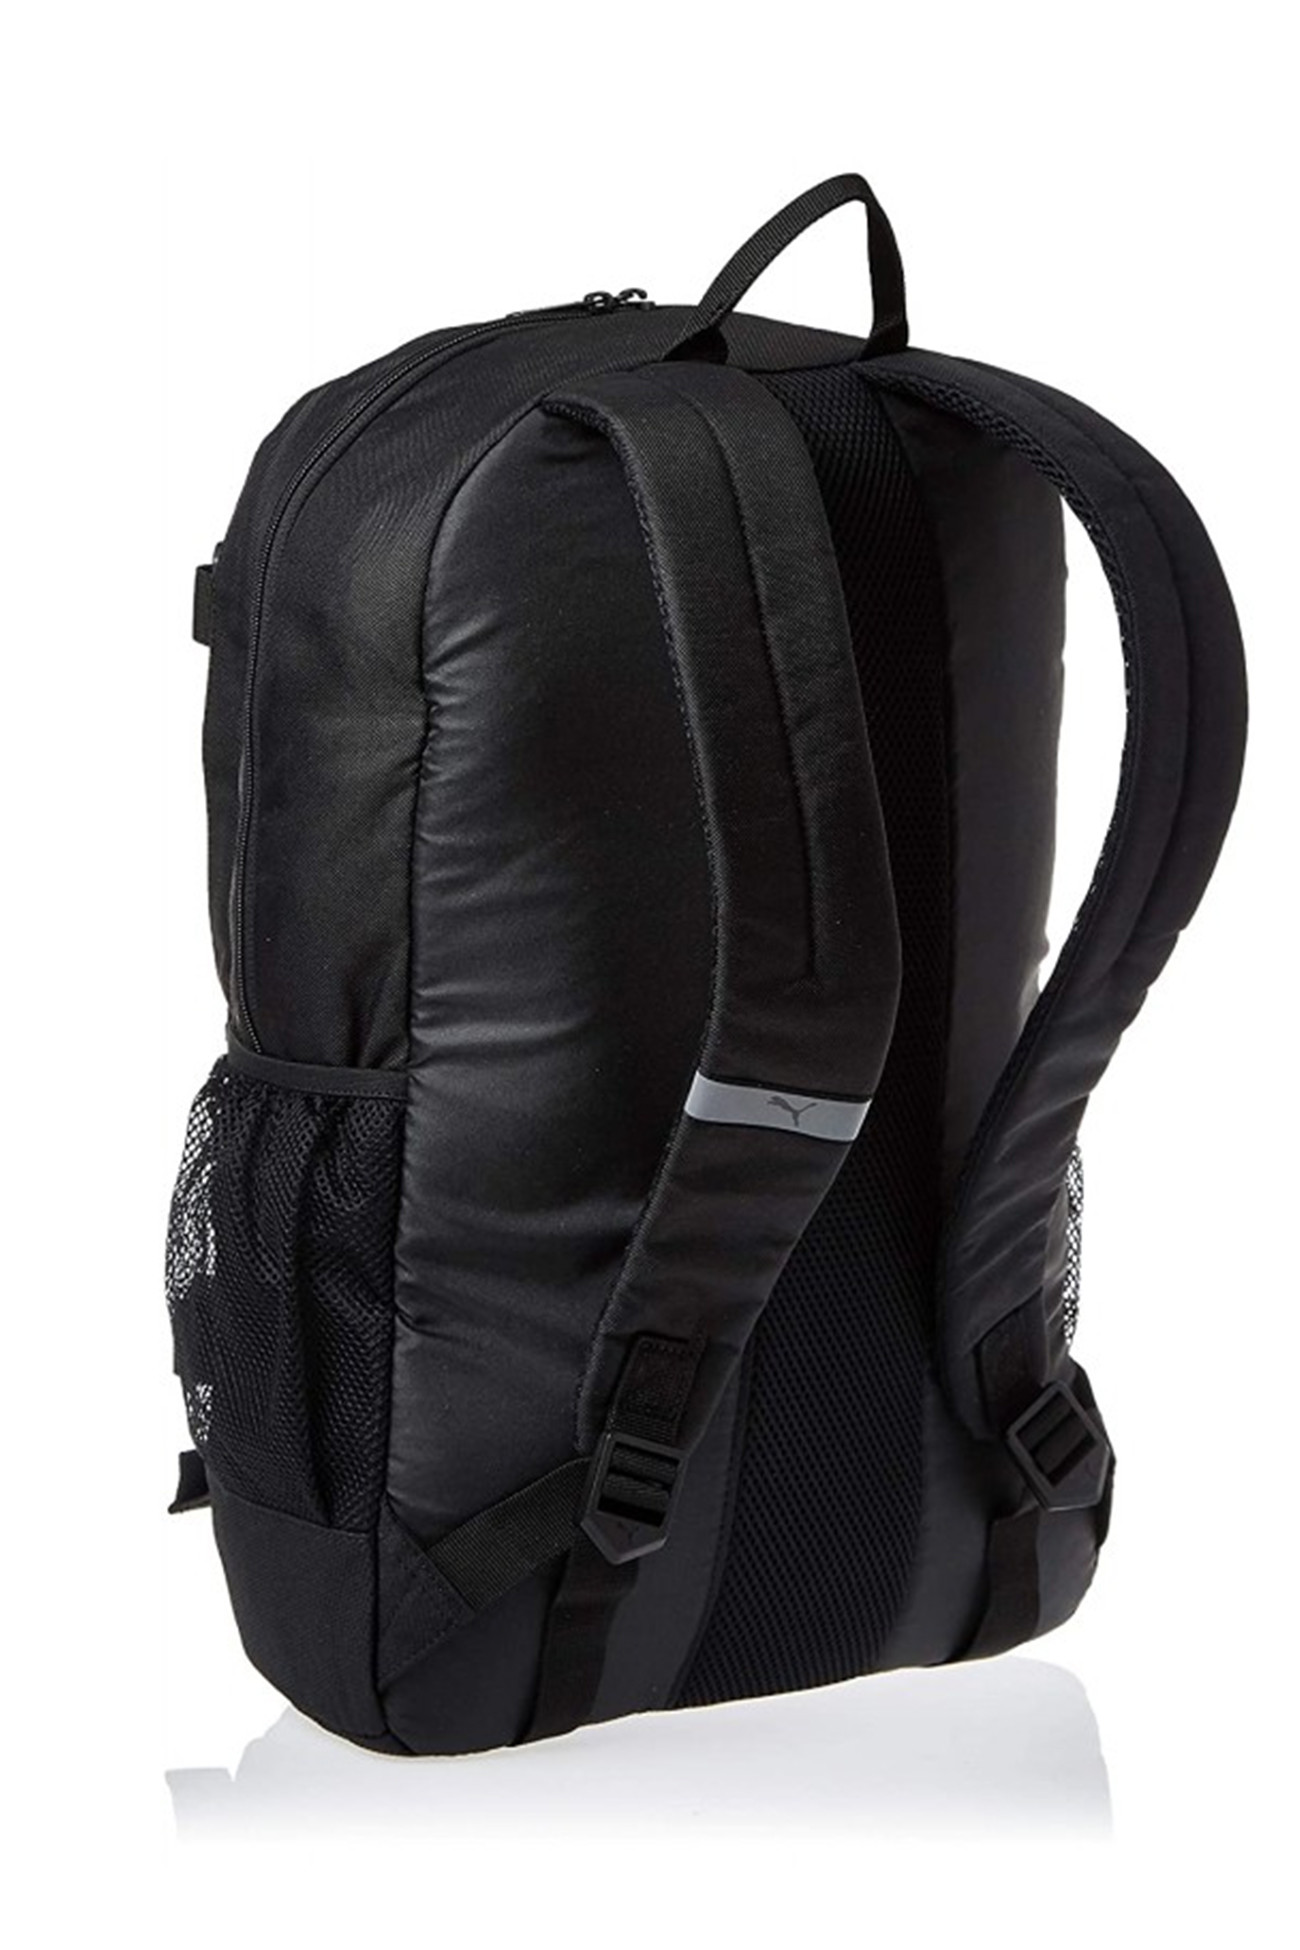 Рюкзак  Puma PUMA Deck Backpack черный 07470601 изображение 3